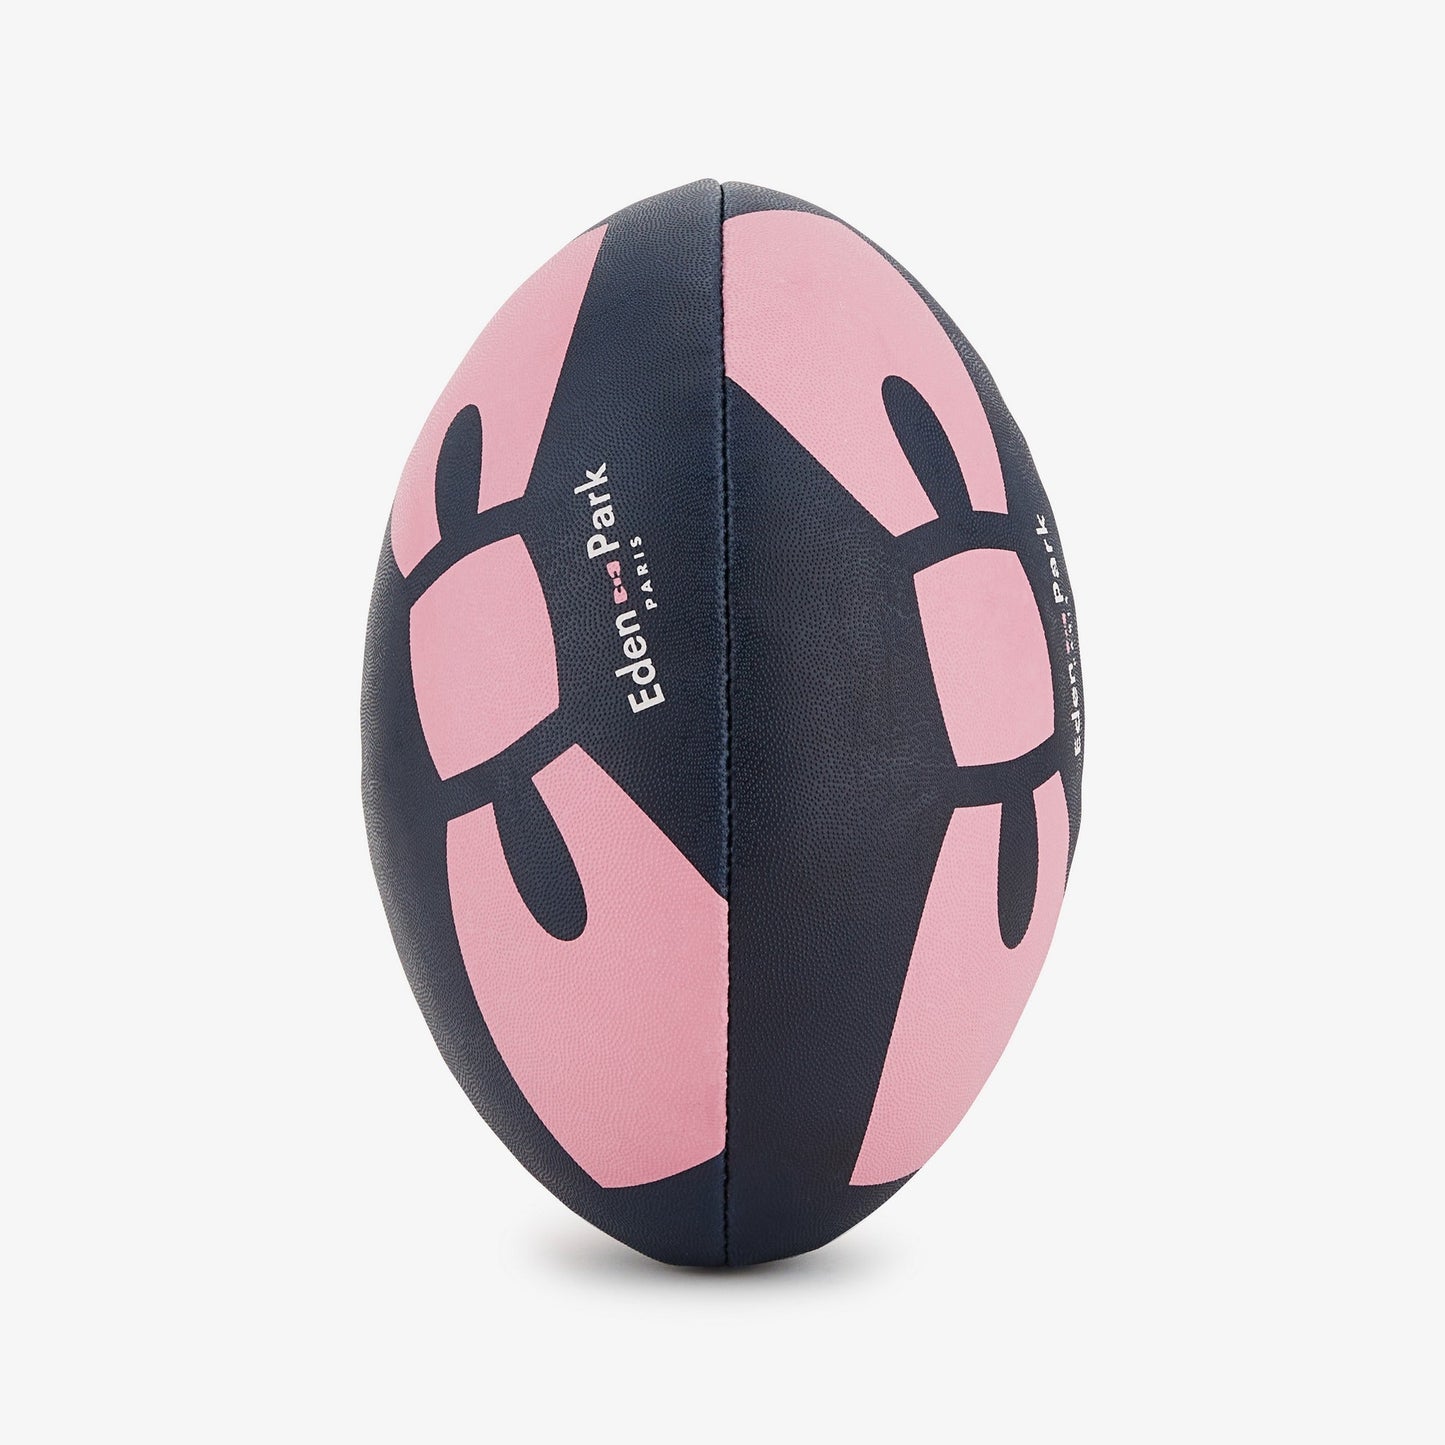 Ballon de rugby bleu foncé cerclé et inscription French Flair - Image 2